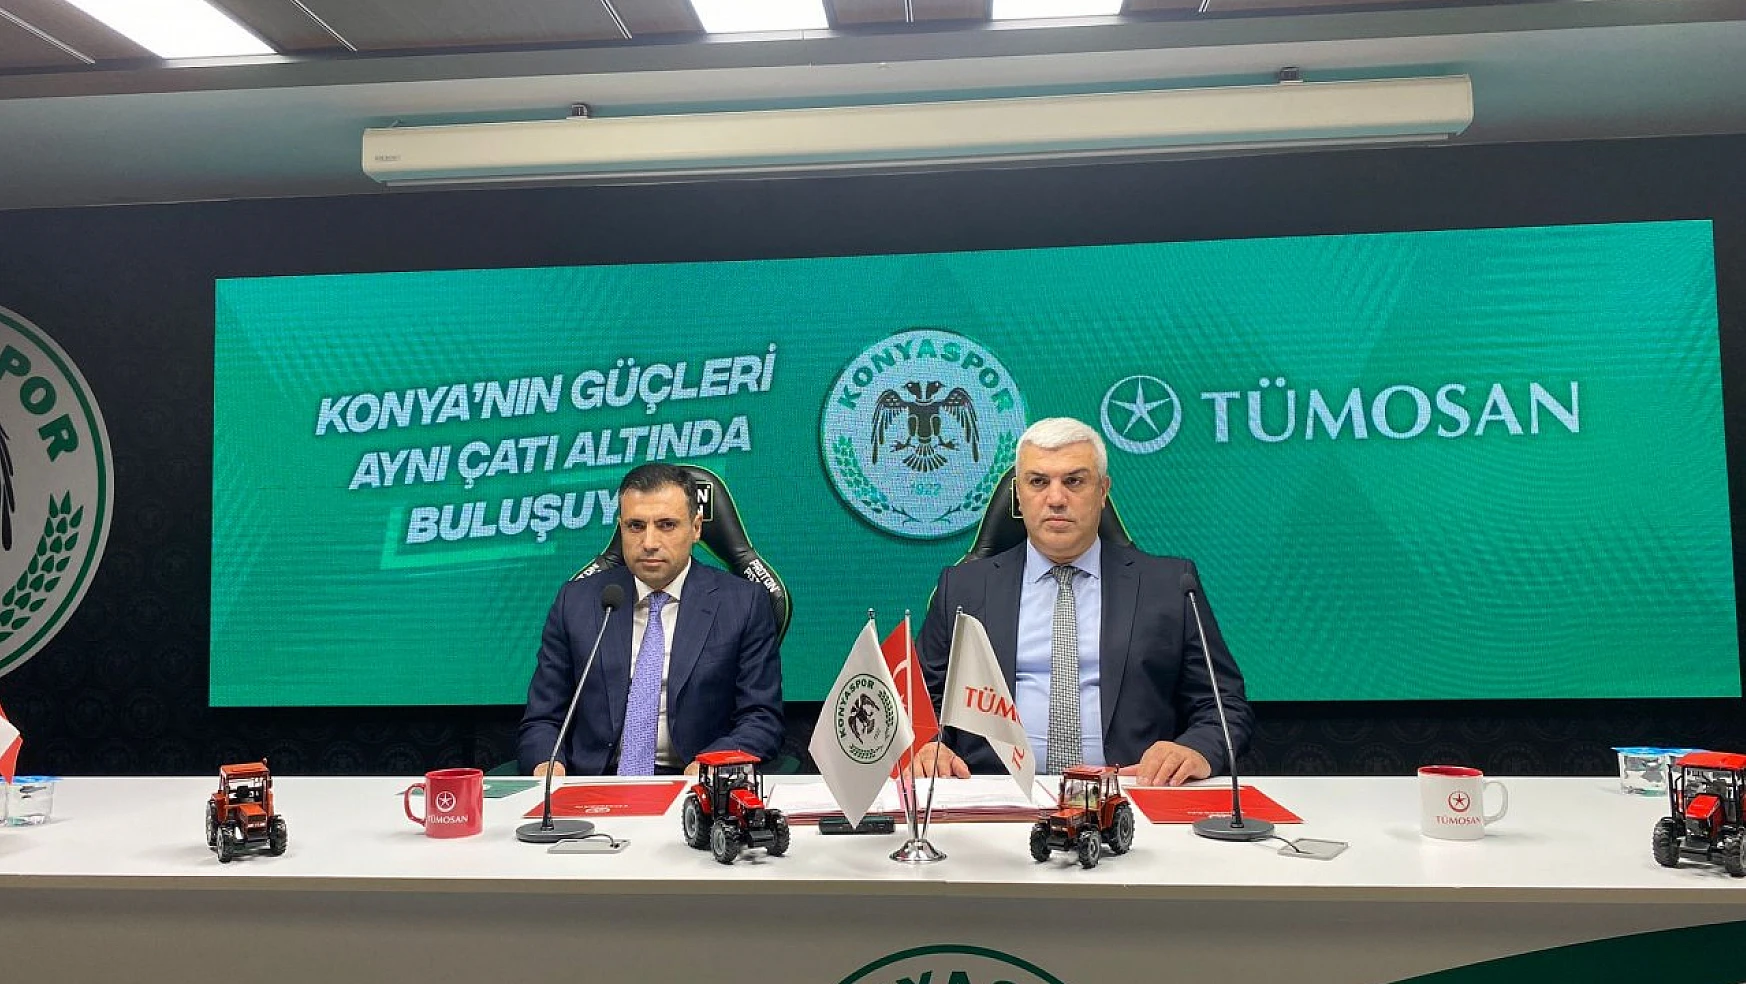 Konyaspor ile TÜMOSAN  arasındaki Anlaşma resmiyete döküldü!